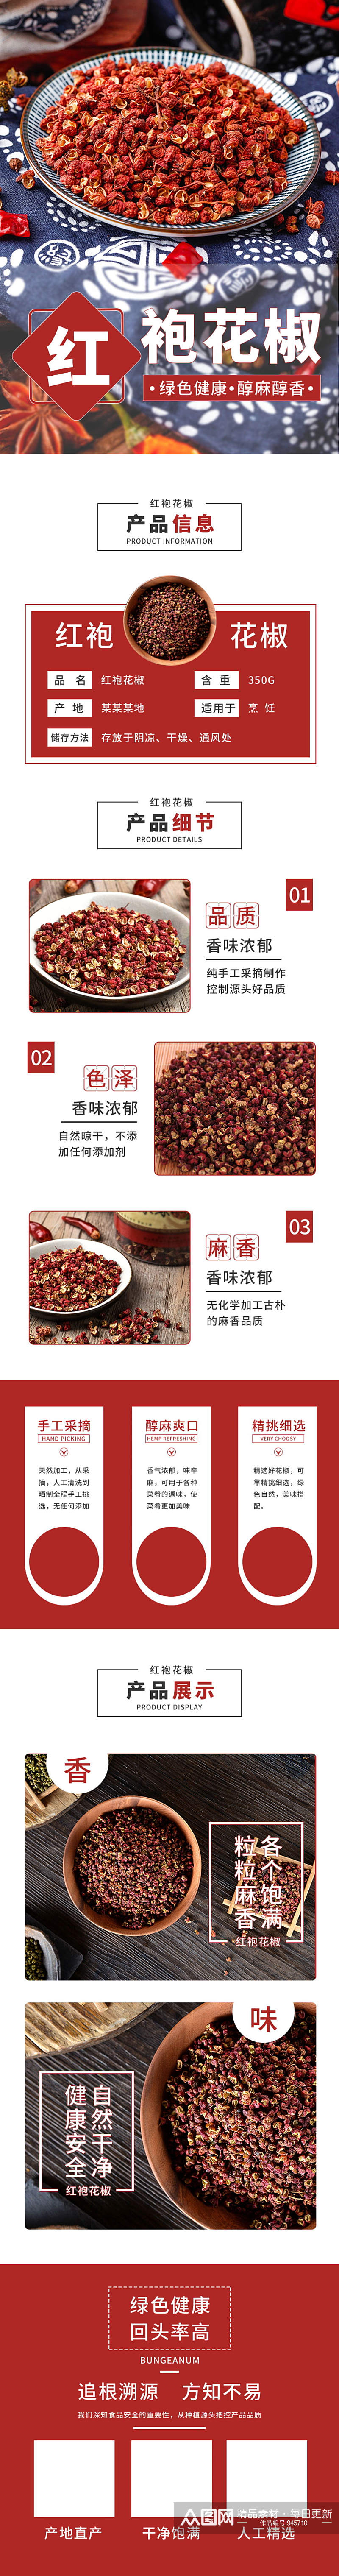 红色干货香料红袍花椒电商淘宝详情页素材